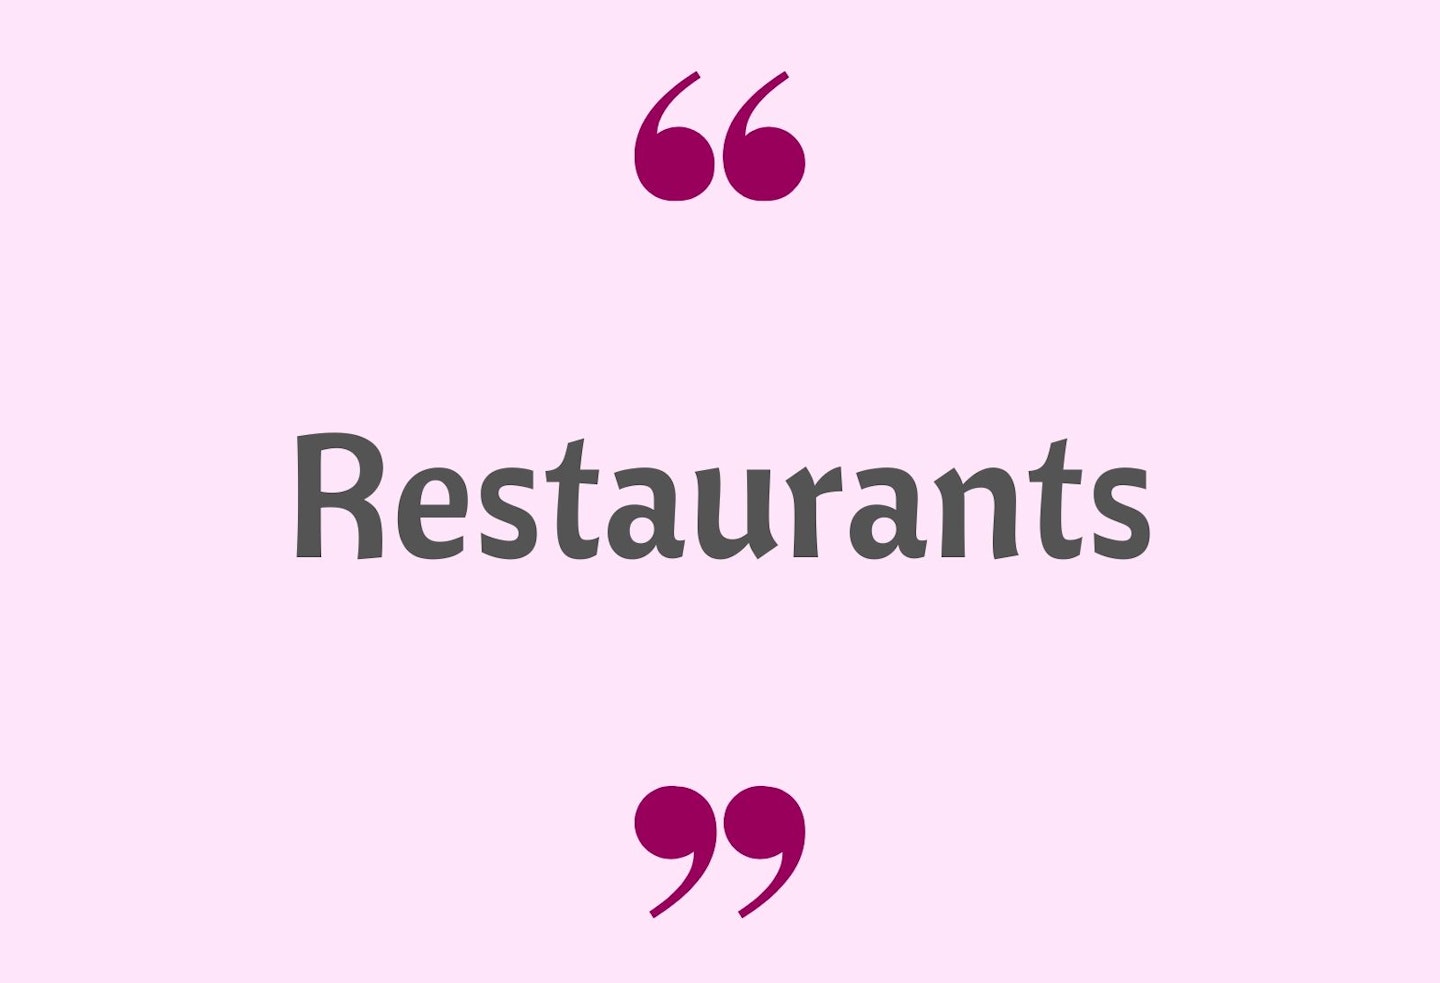 25) Restaurants